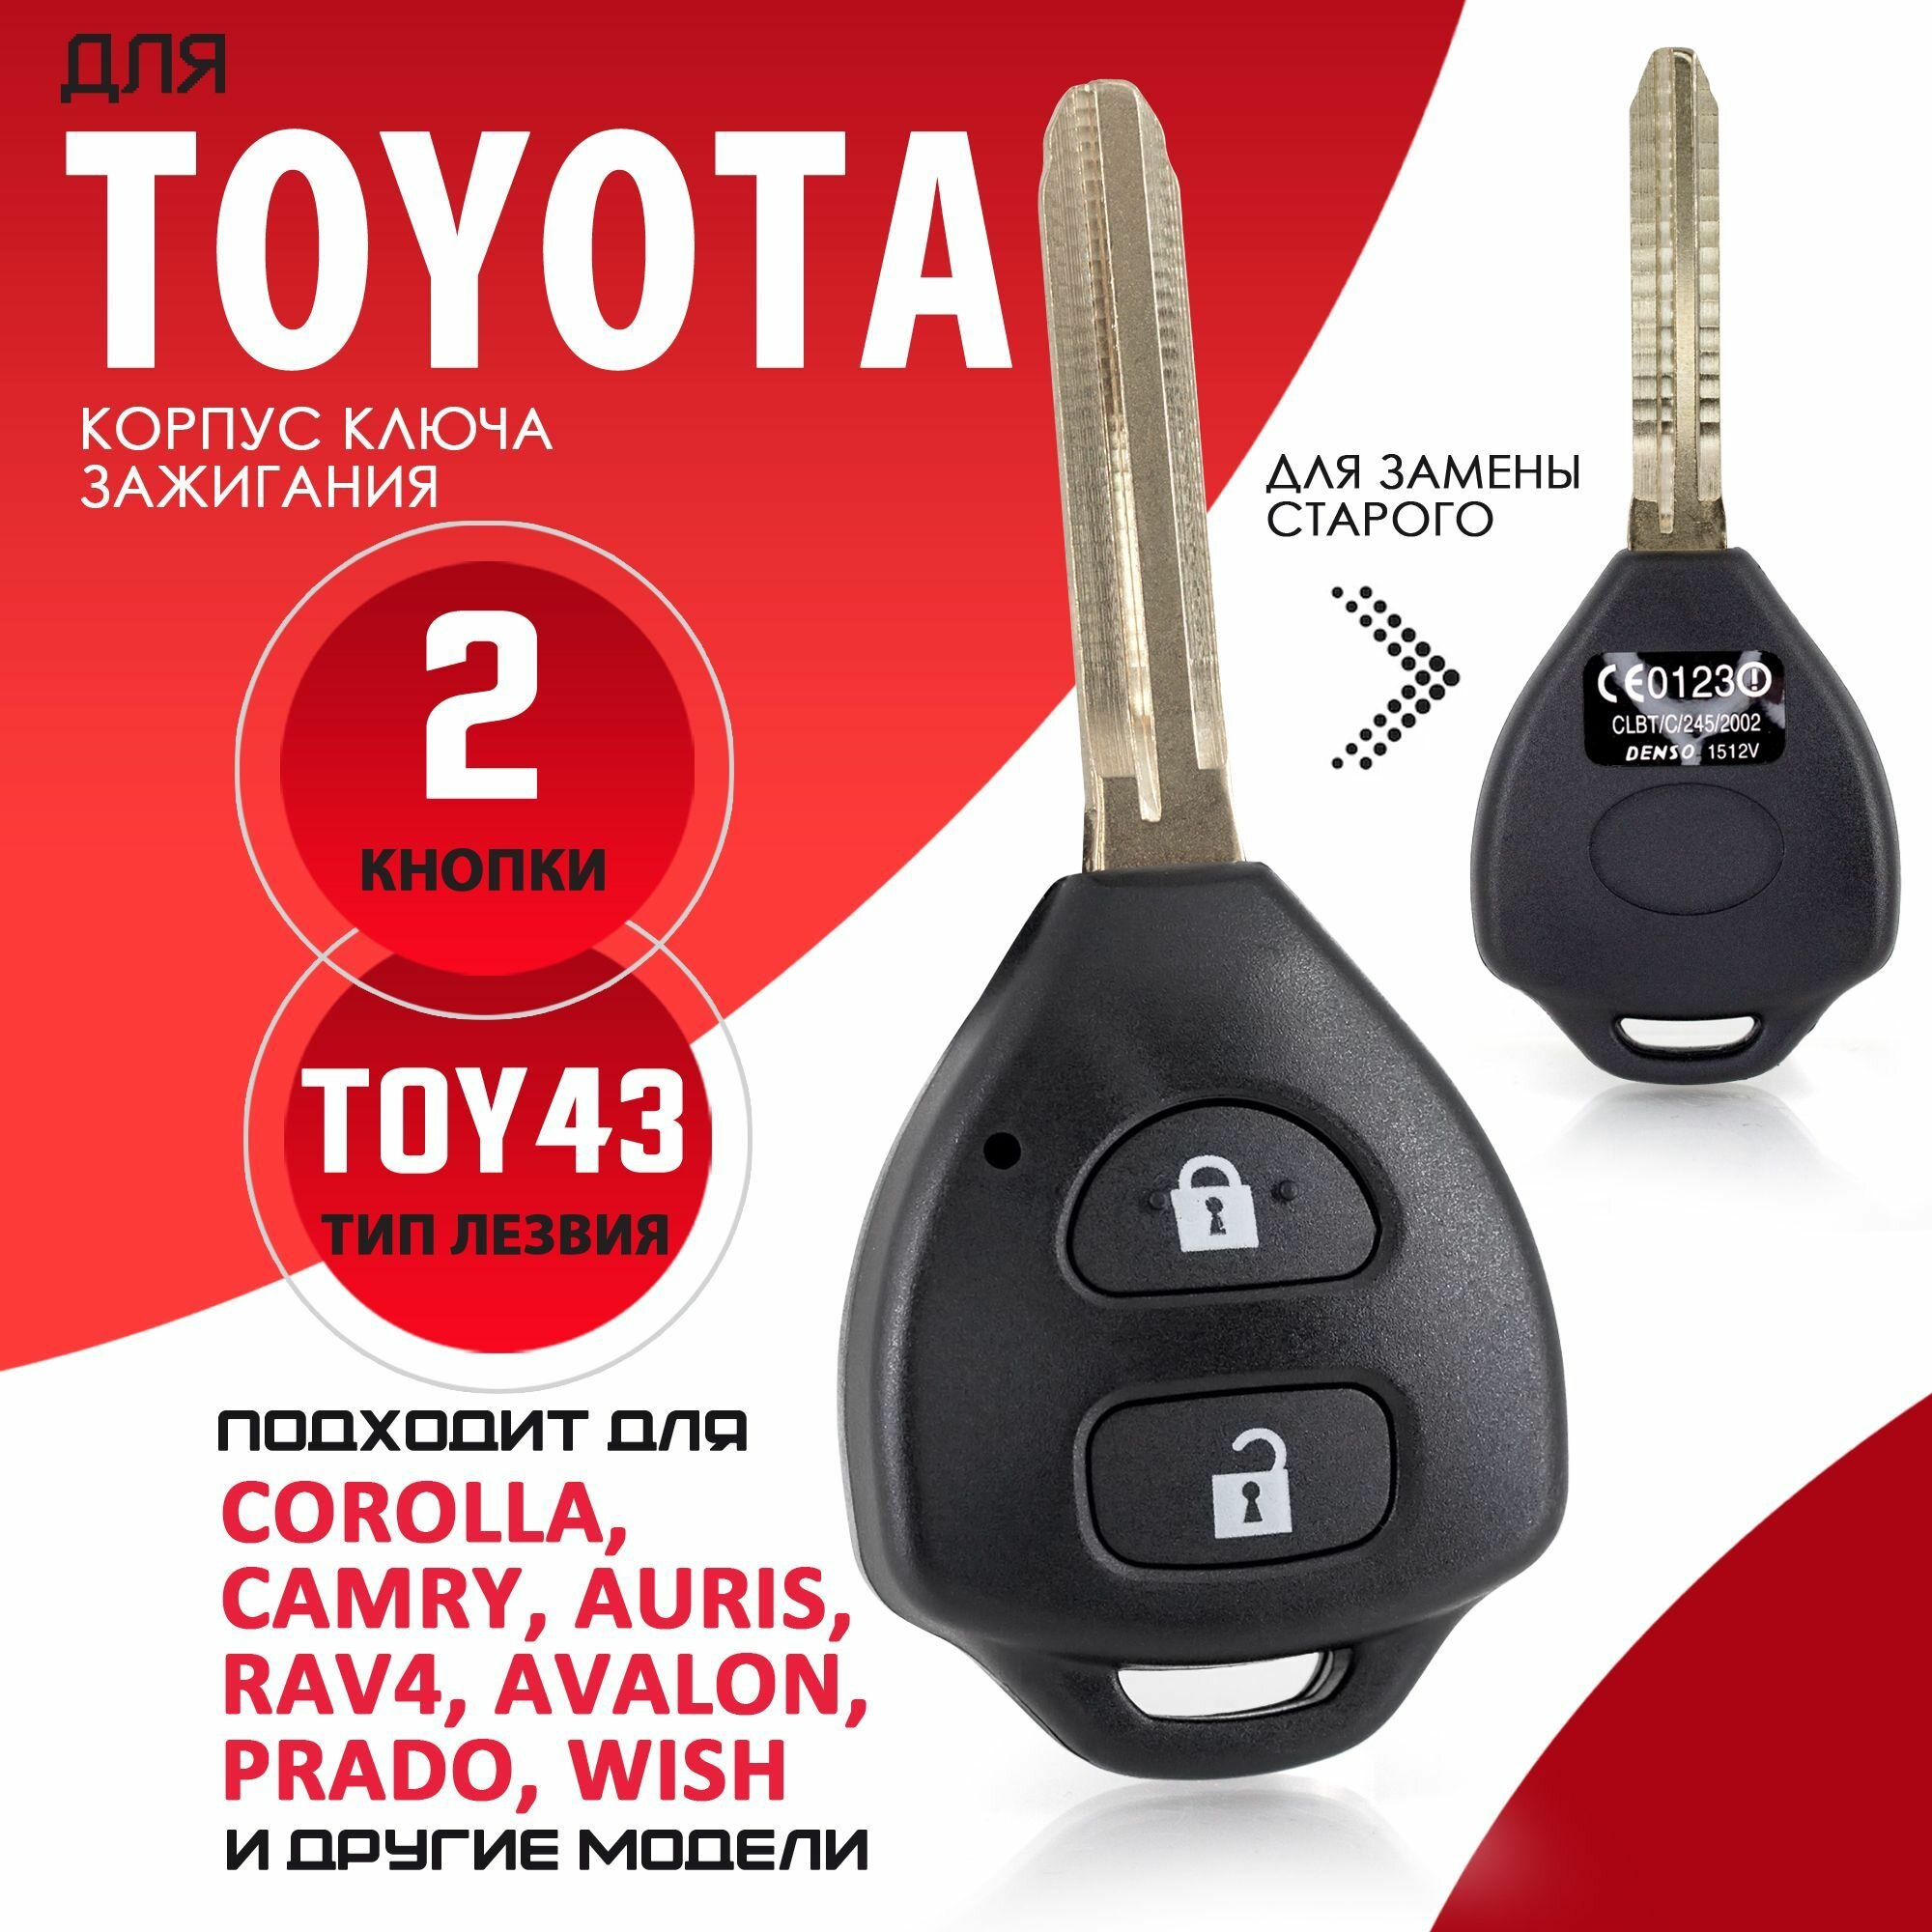 Корпус ключа зажигания для Toyota / Тойота лезвие TOY43 - 2 кнопки / Брелок автомобильный